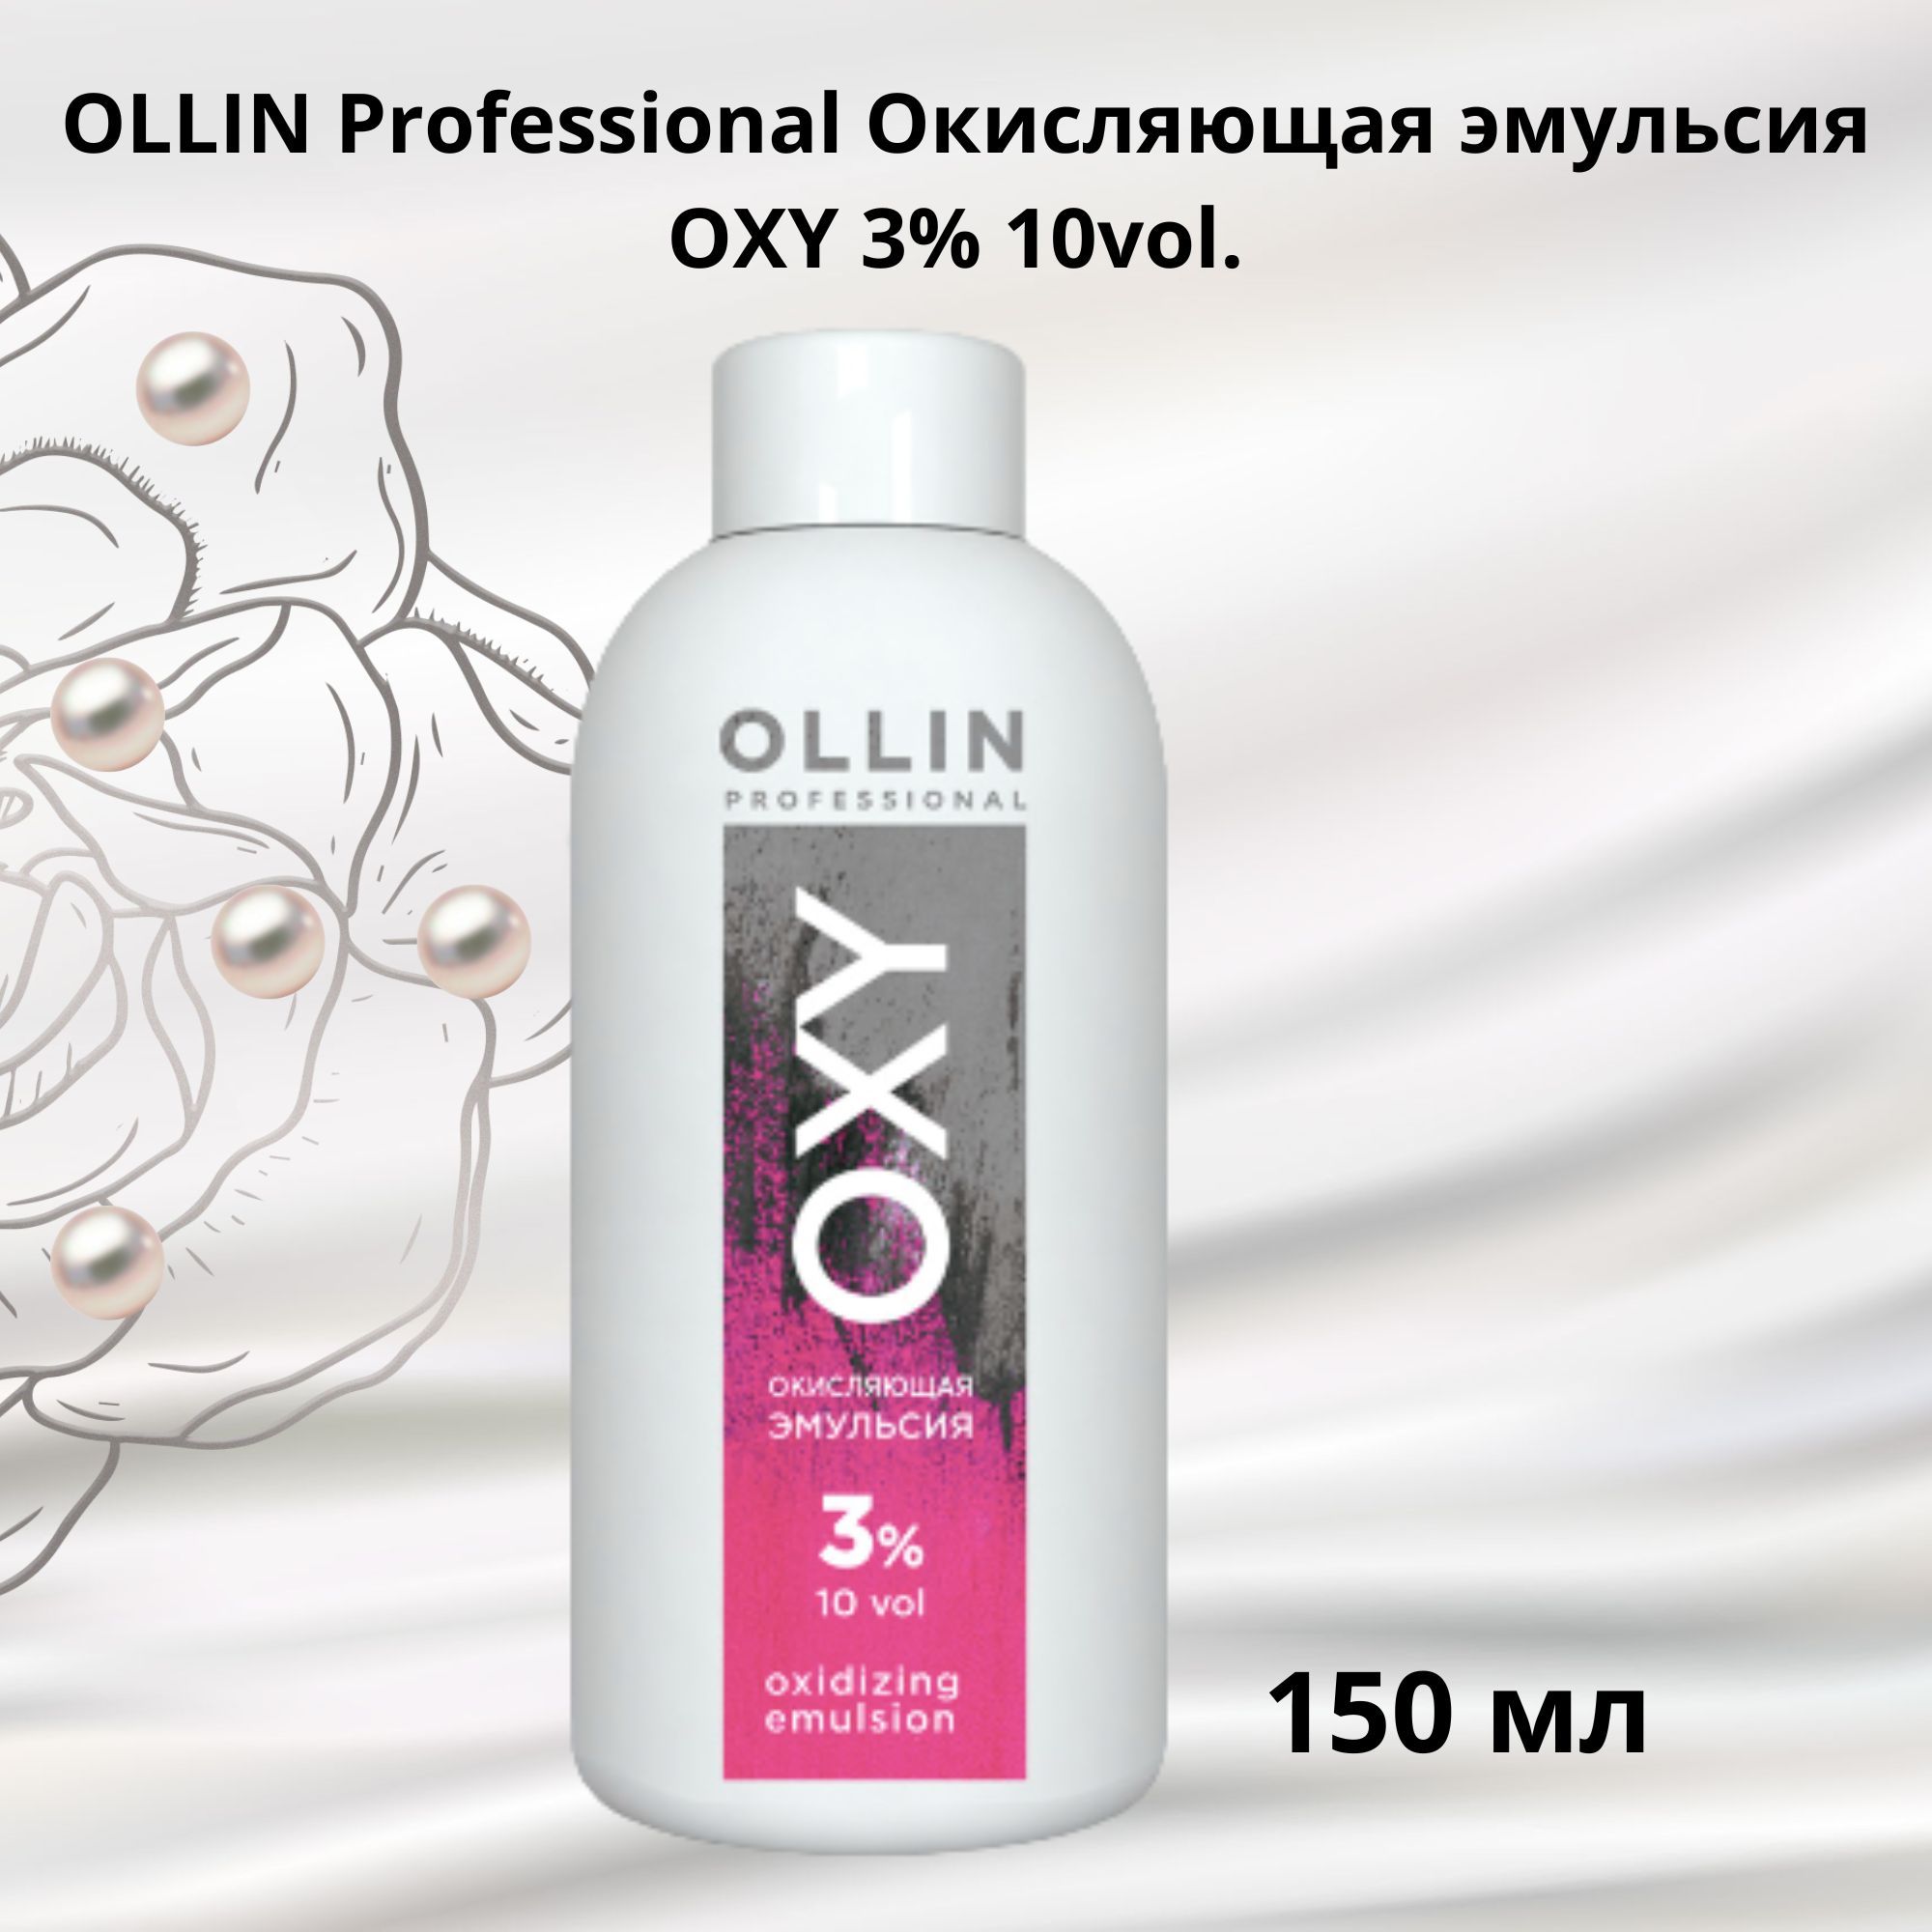 Окисляющая эмульсия ollin